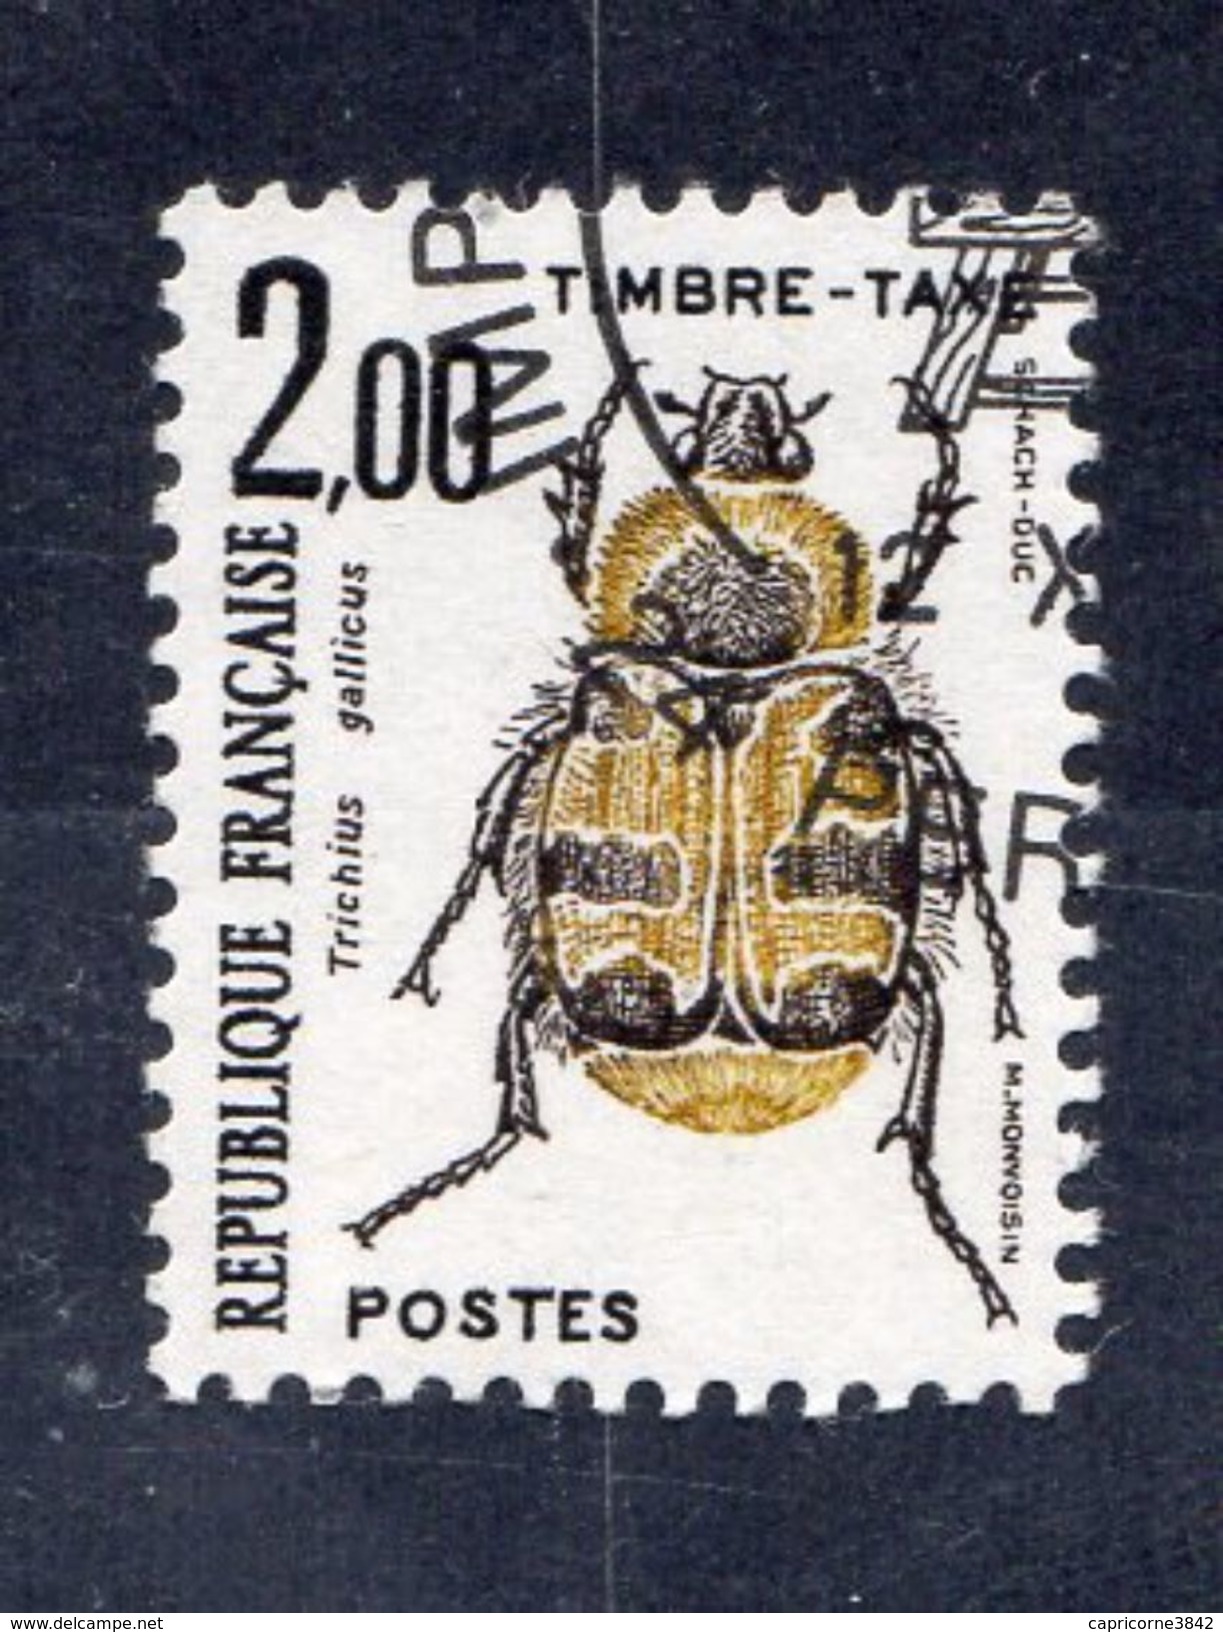 Timbre Taxe "Coléoptère" N° 107 - Neuf  - Préoblitéré Cachet "Imprimerie Des Timbres-Poste De Périgueux" - 1960-.... Mint/hinged